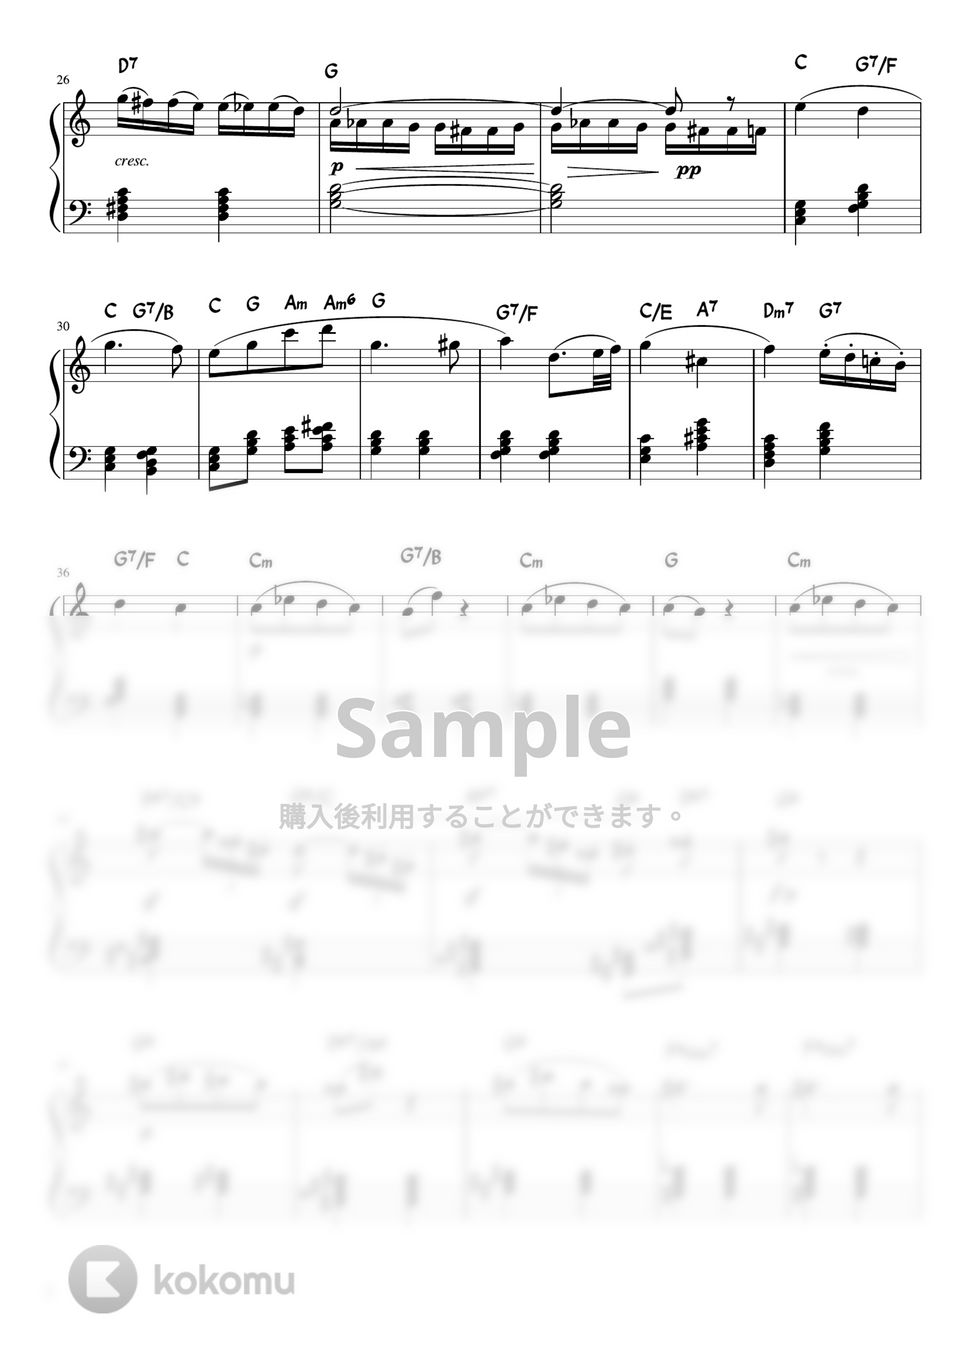 ベートーヴェン - ピアノソナタ第8番第2楽章「悲愴」 (C・ピアノソロ/コード和音で弾く) by pfkaori